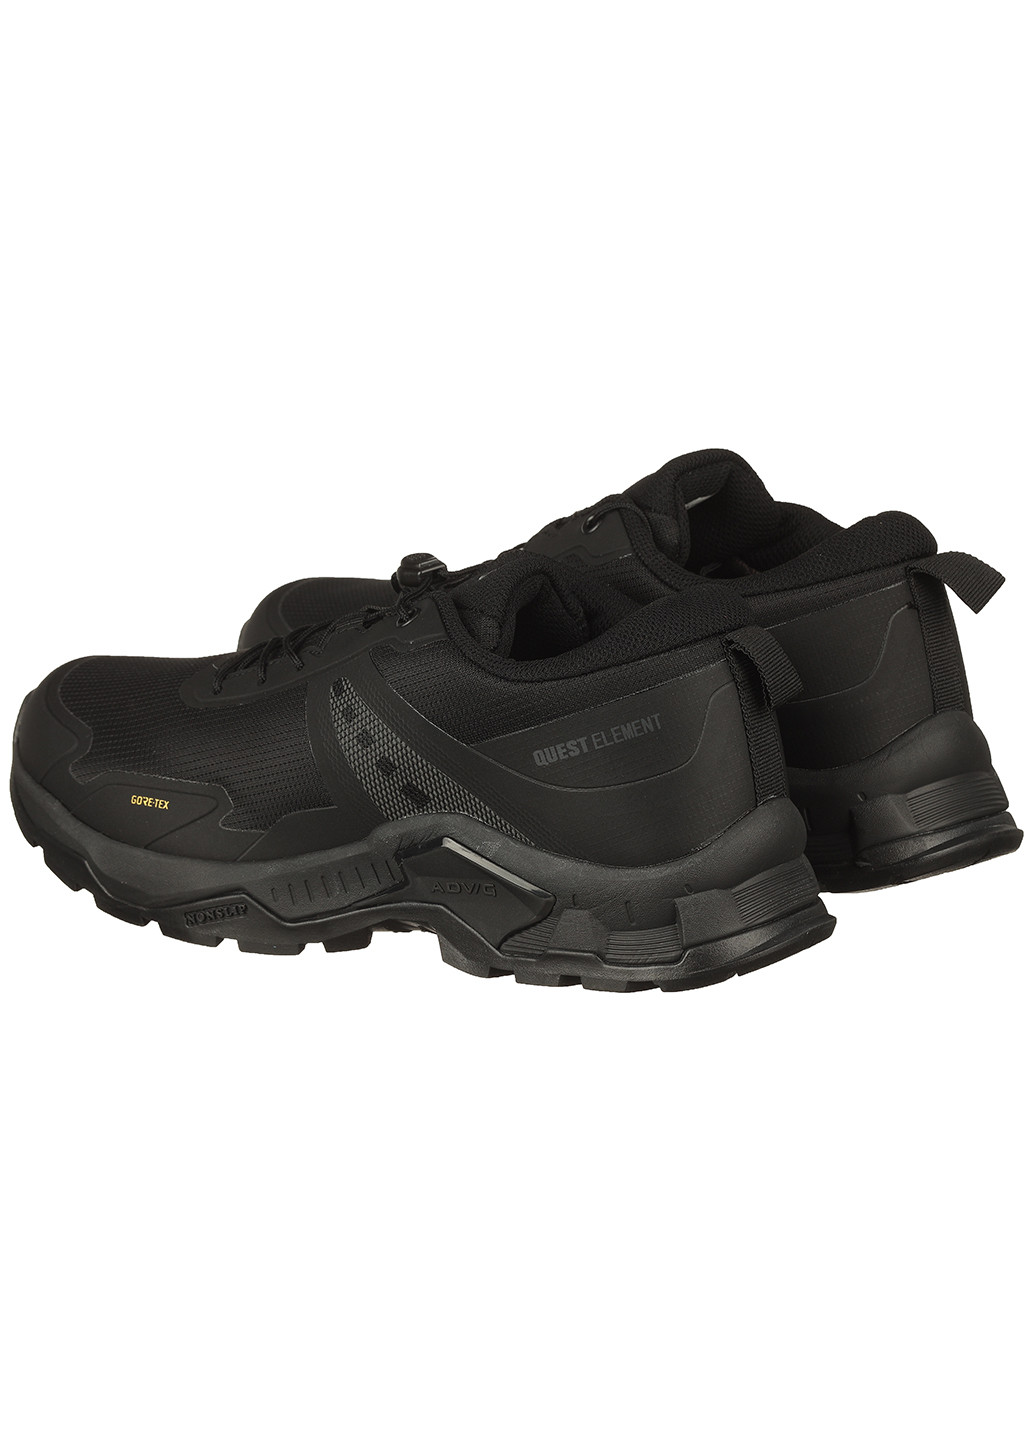 Черные демисезонные мужские термо кроссовки с текстиля a2593-1 Supo